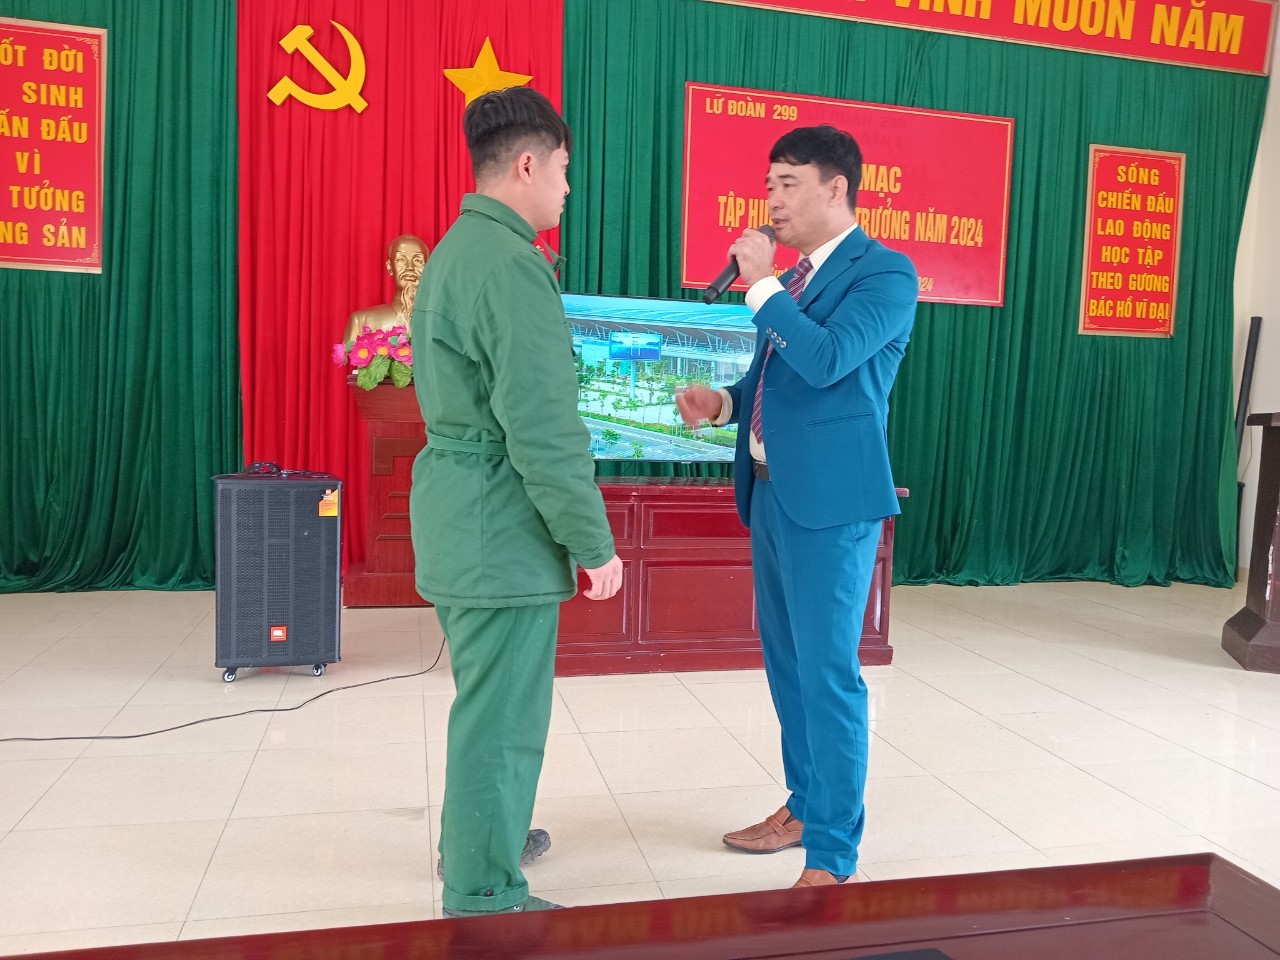 TVPTS Ninh Bình-Tư vấn, định hướng nghề cho bộ đội xuất ngũ Lữ đoàn 299